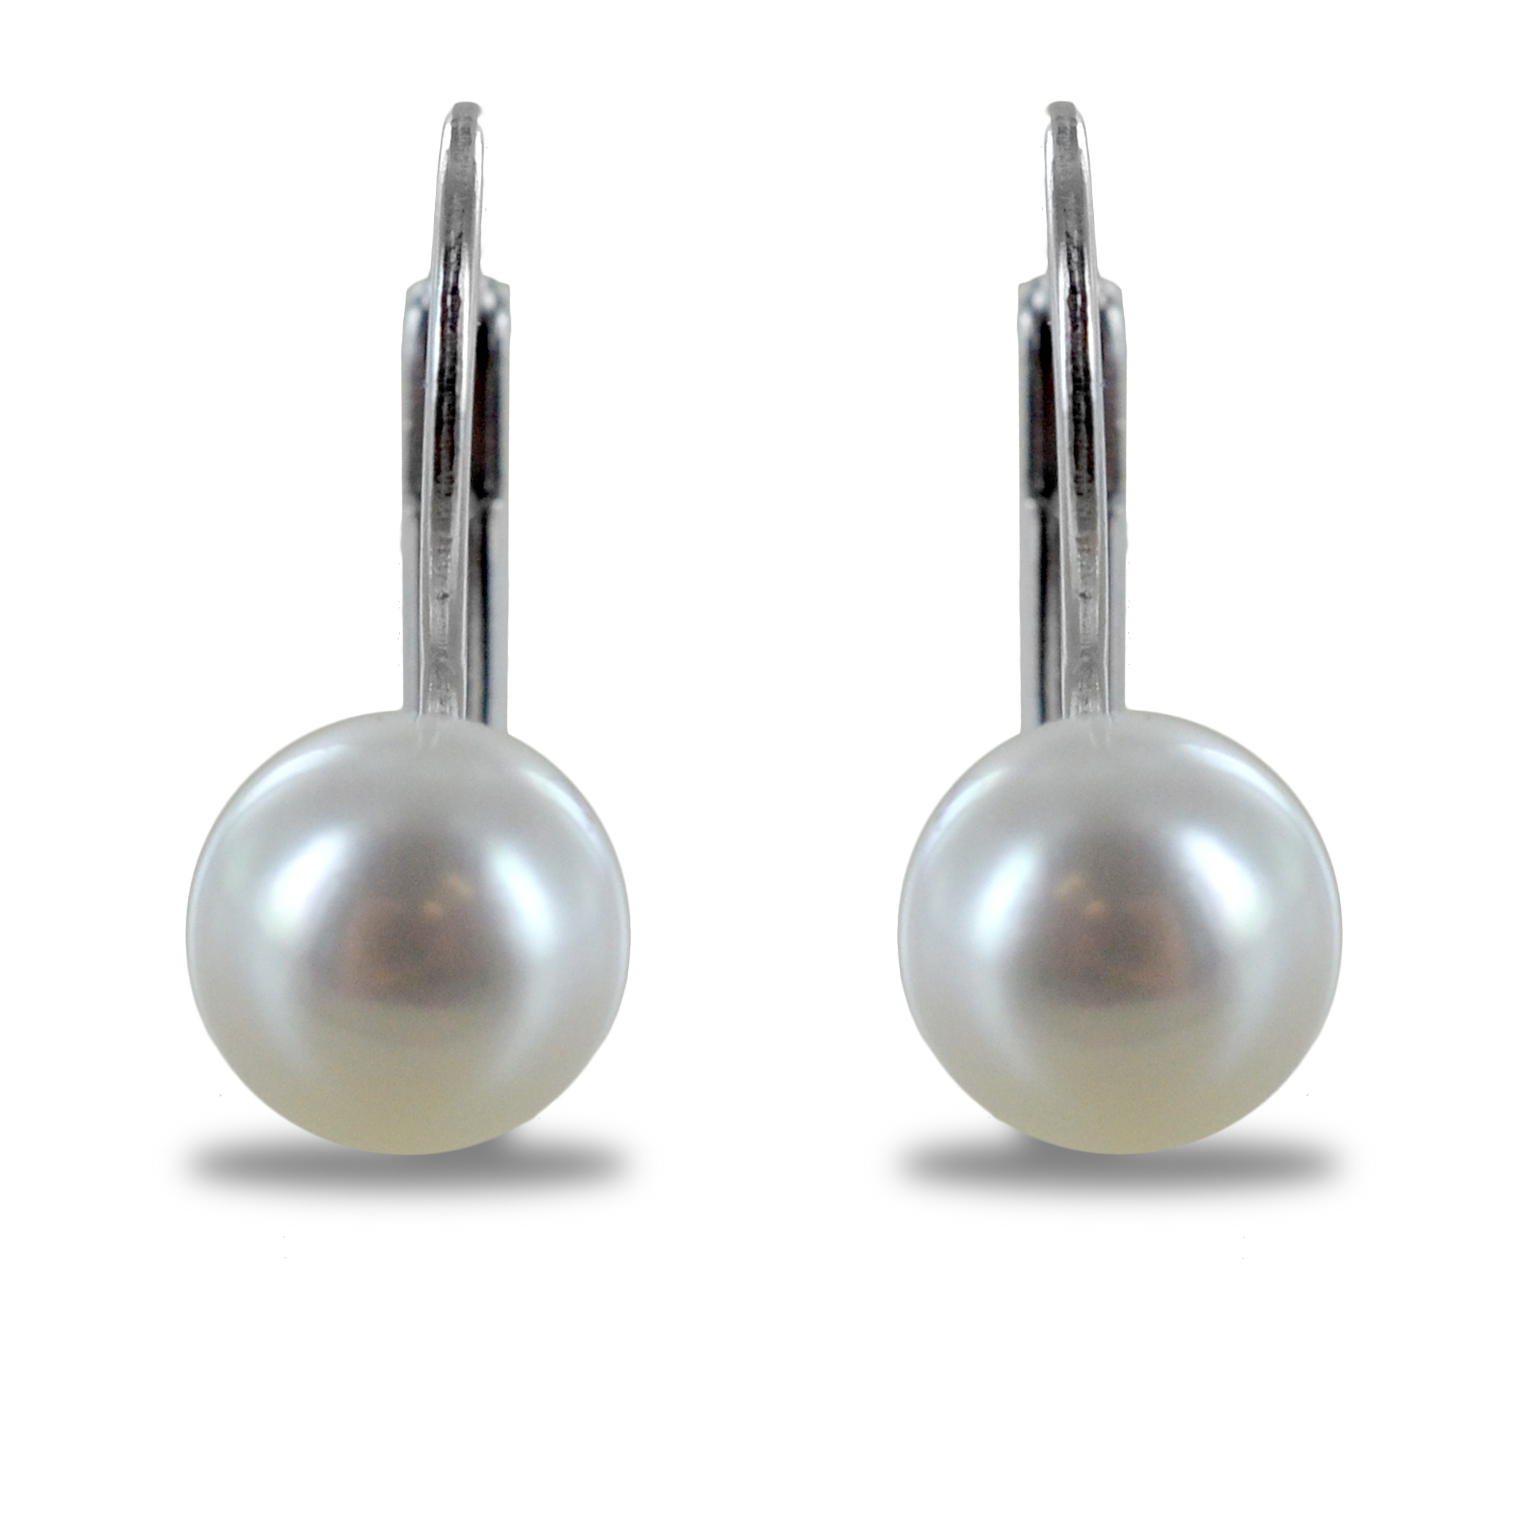 Orecchini a monachella in argento con pendente Perle 7 mm